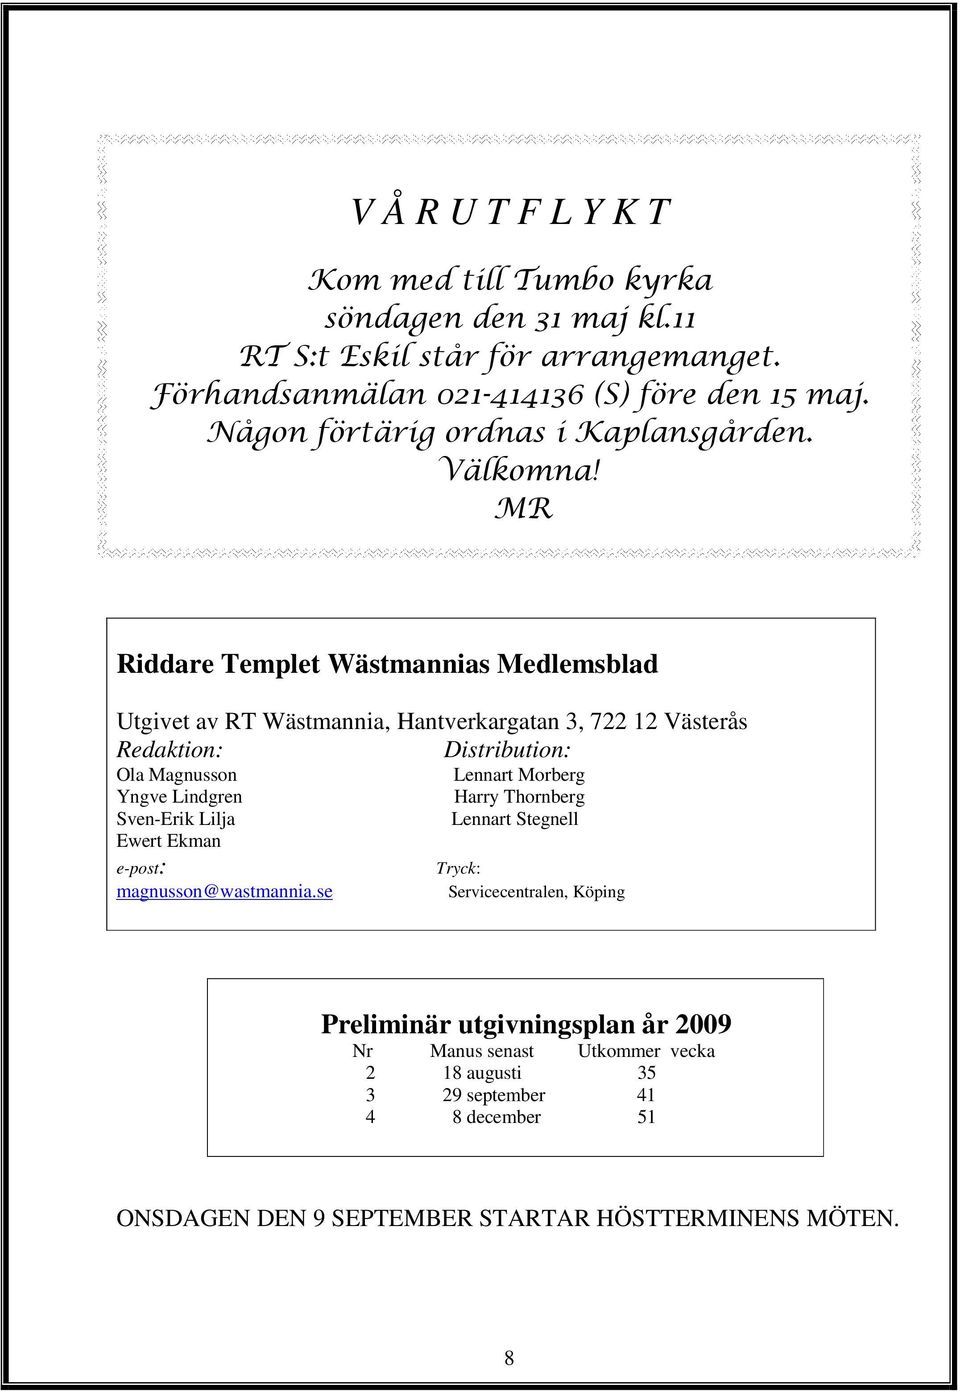 MR Riddare Templet Wästmannias Medlemsblad Utgivet av RT Wästmannia, Hantverkargatan 3, 722 12 Västerås Redaktion: Distribution: Ola Magnusson Yngve Lindgren Sven-Erik